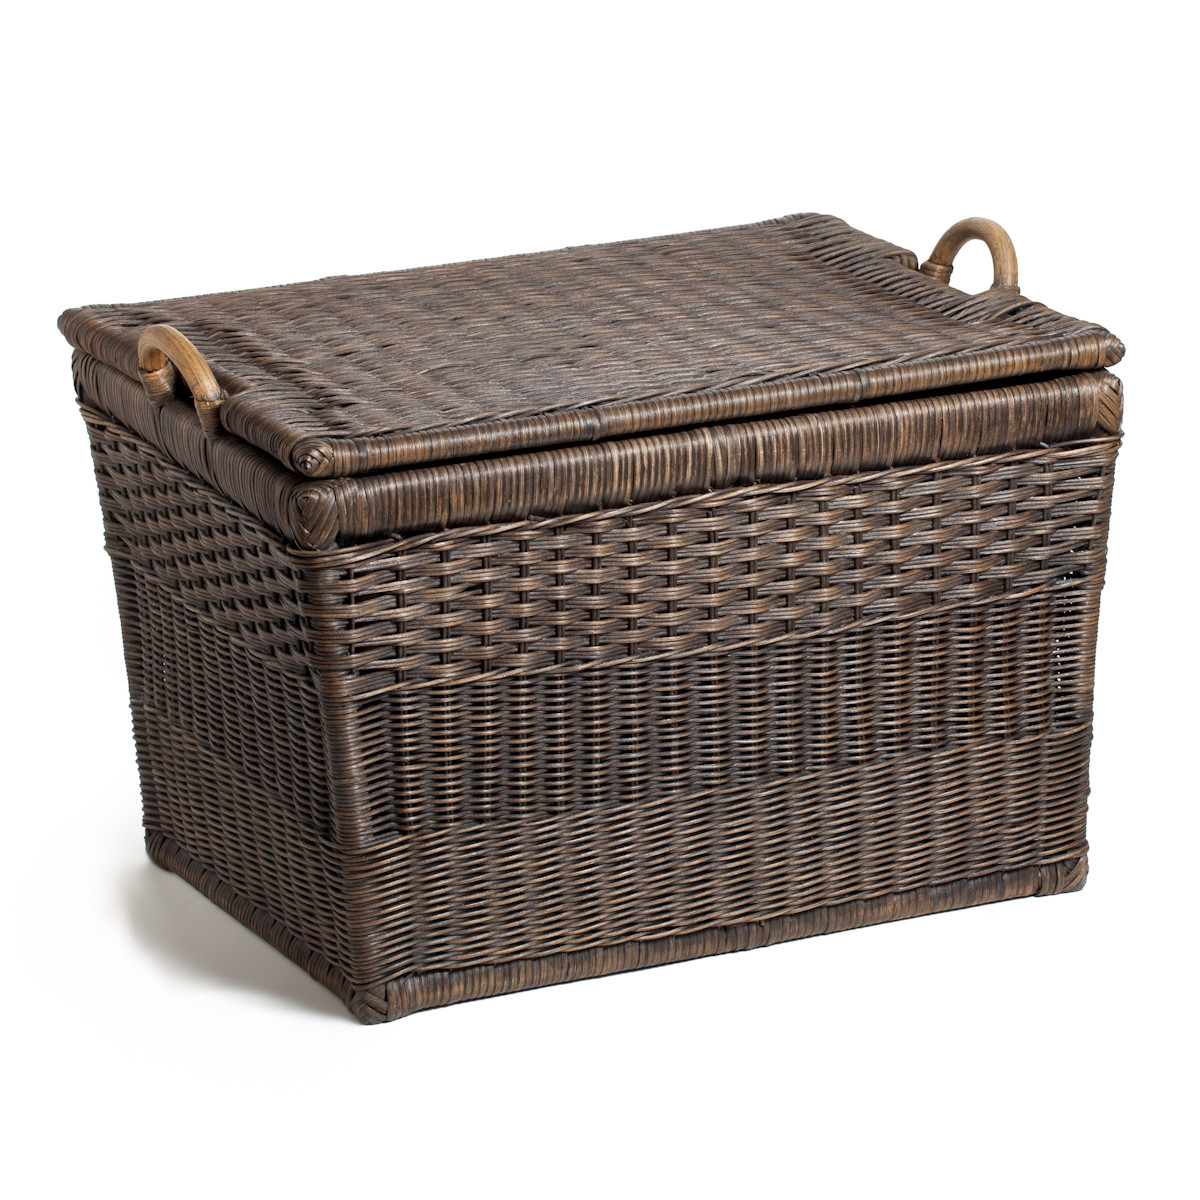 Trending ... The Basket Lady Lift-off Lid Wicker Storage Basket ... wicker storage baskets